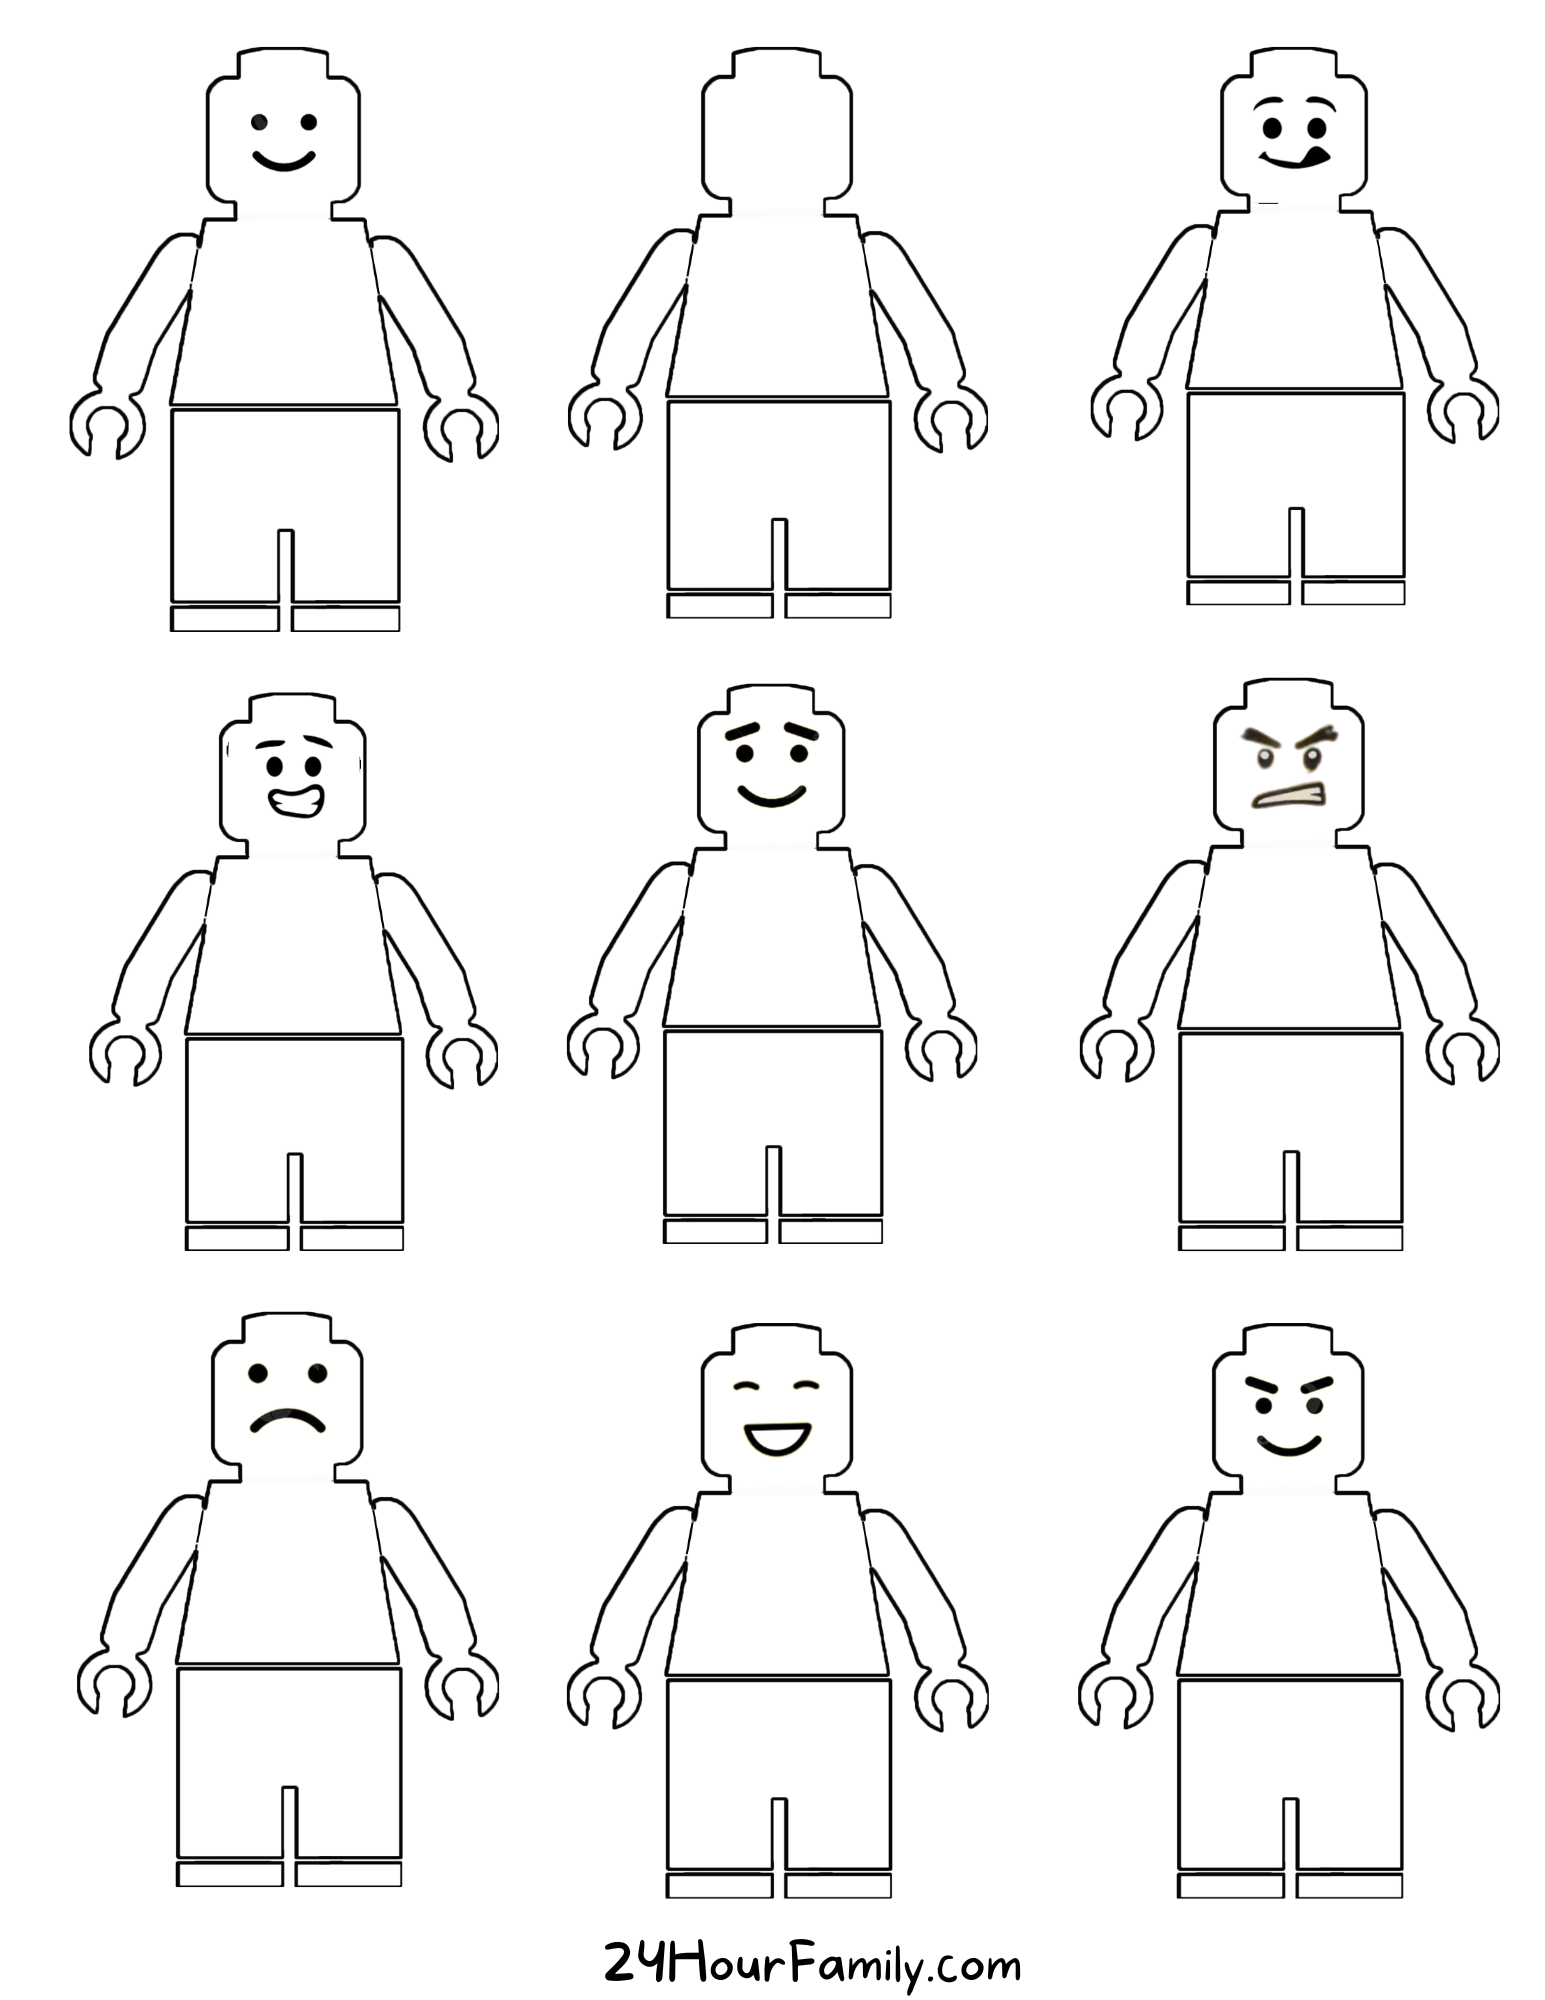 Lego Man Printable (22 Free Templates)